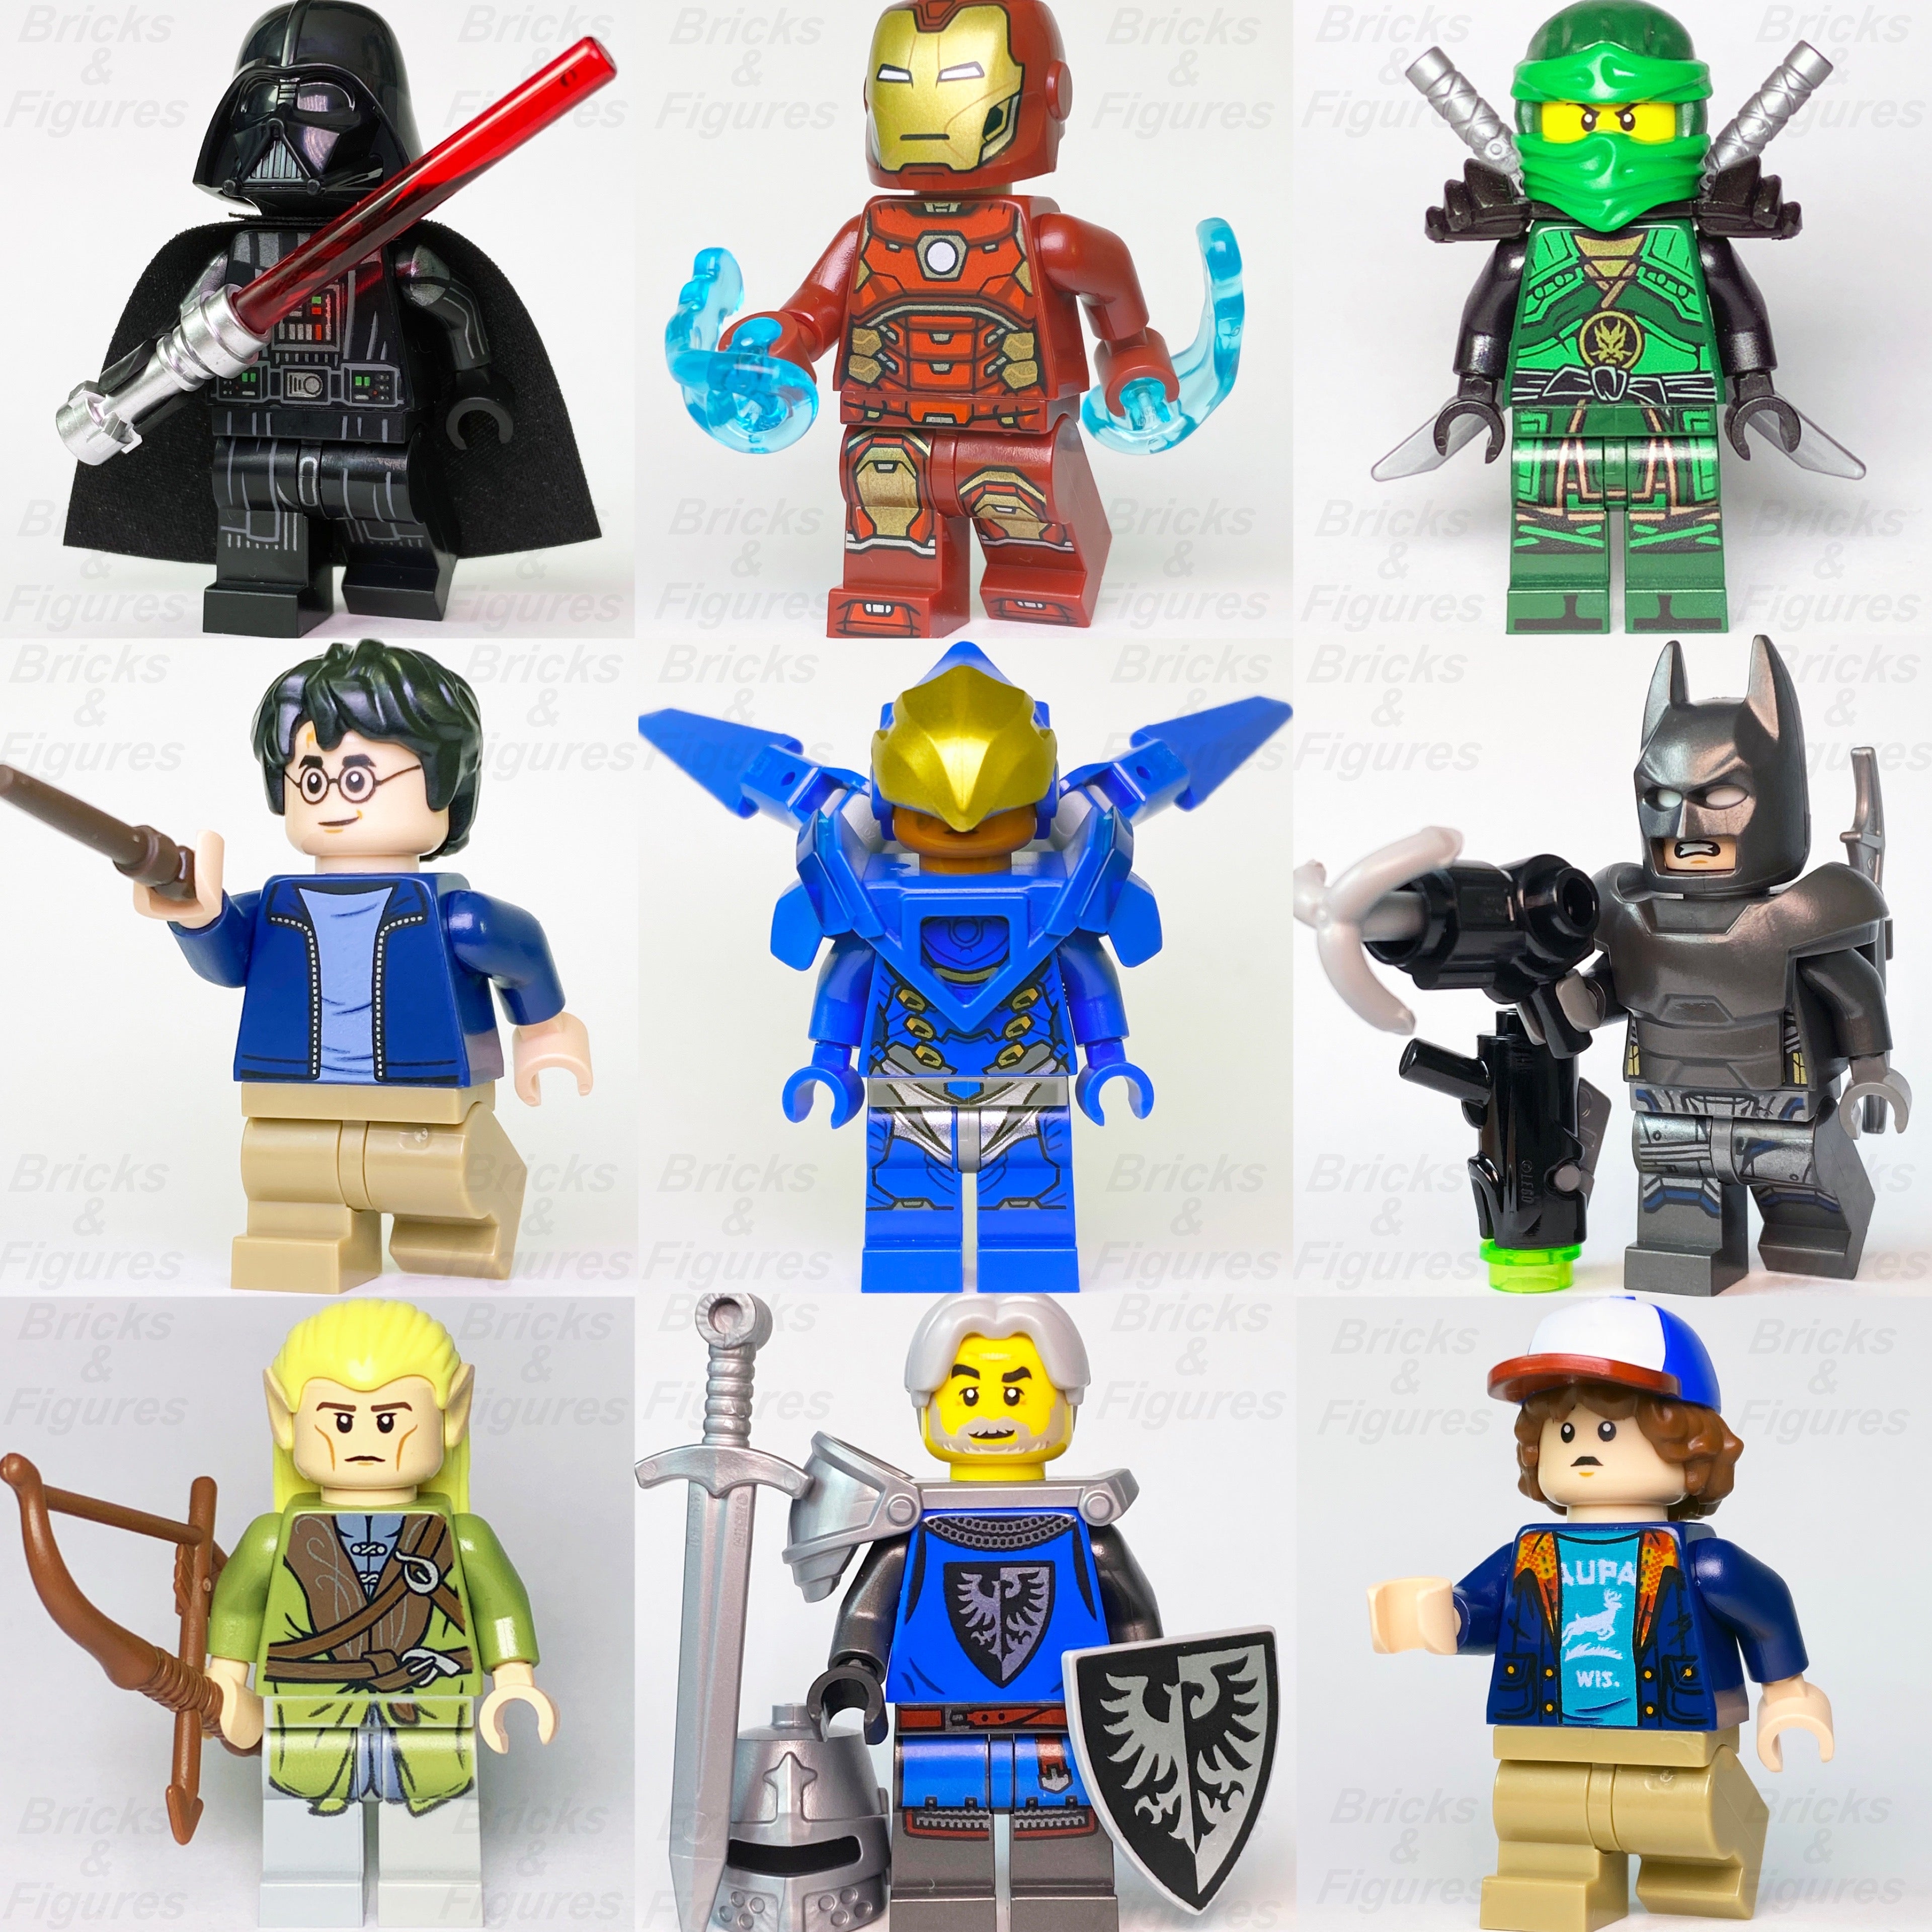 LEGO Minifigures Online Shop